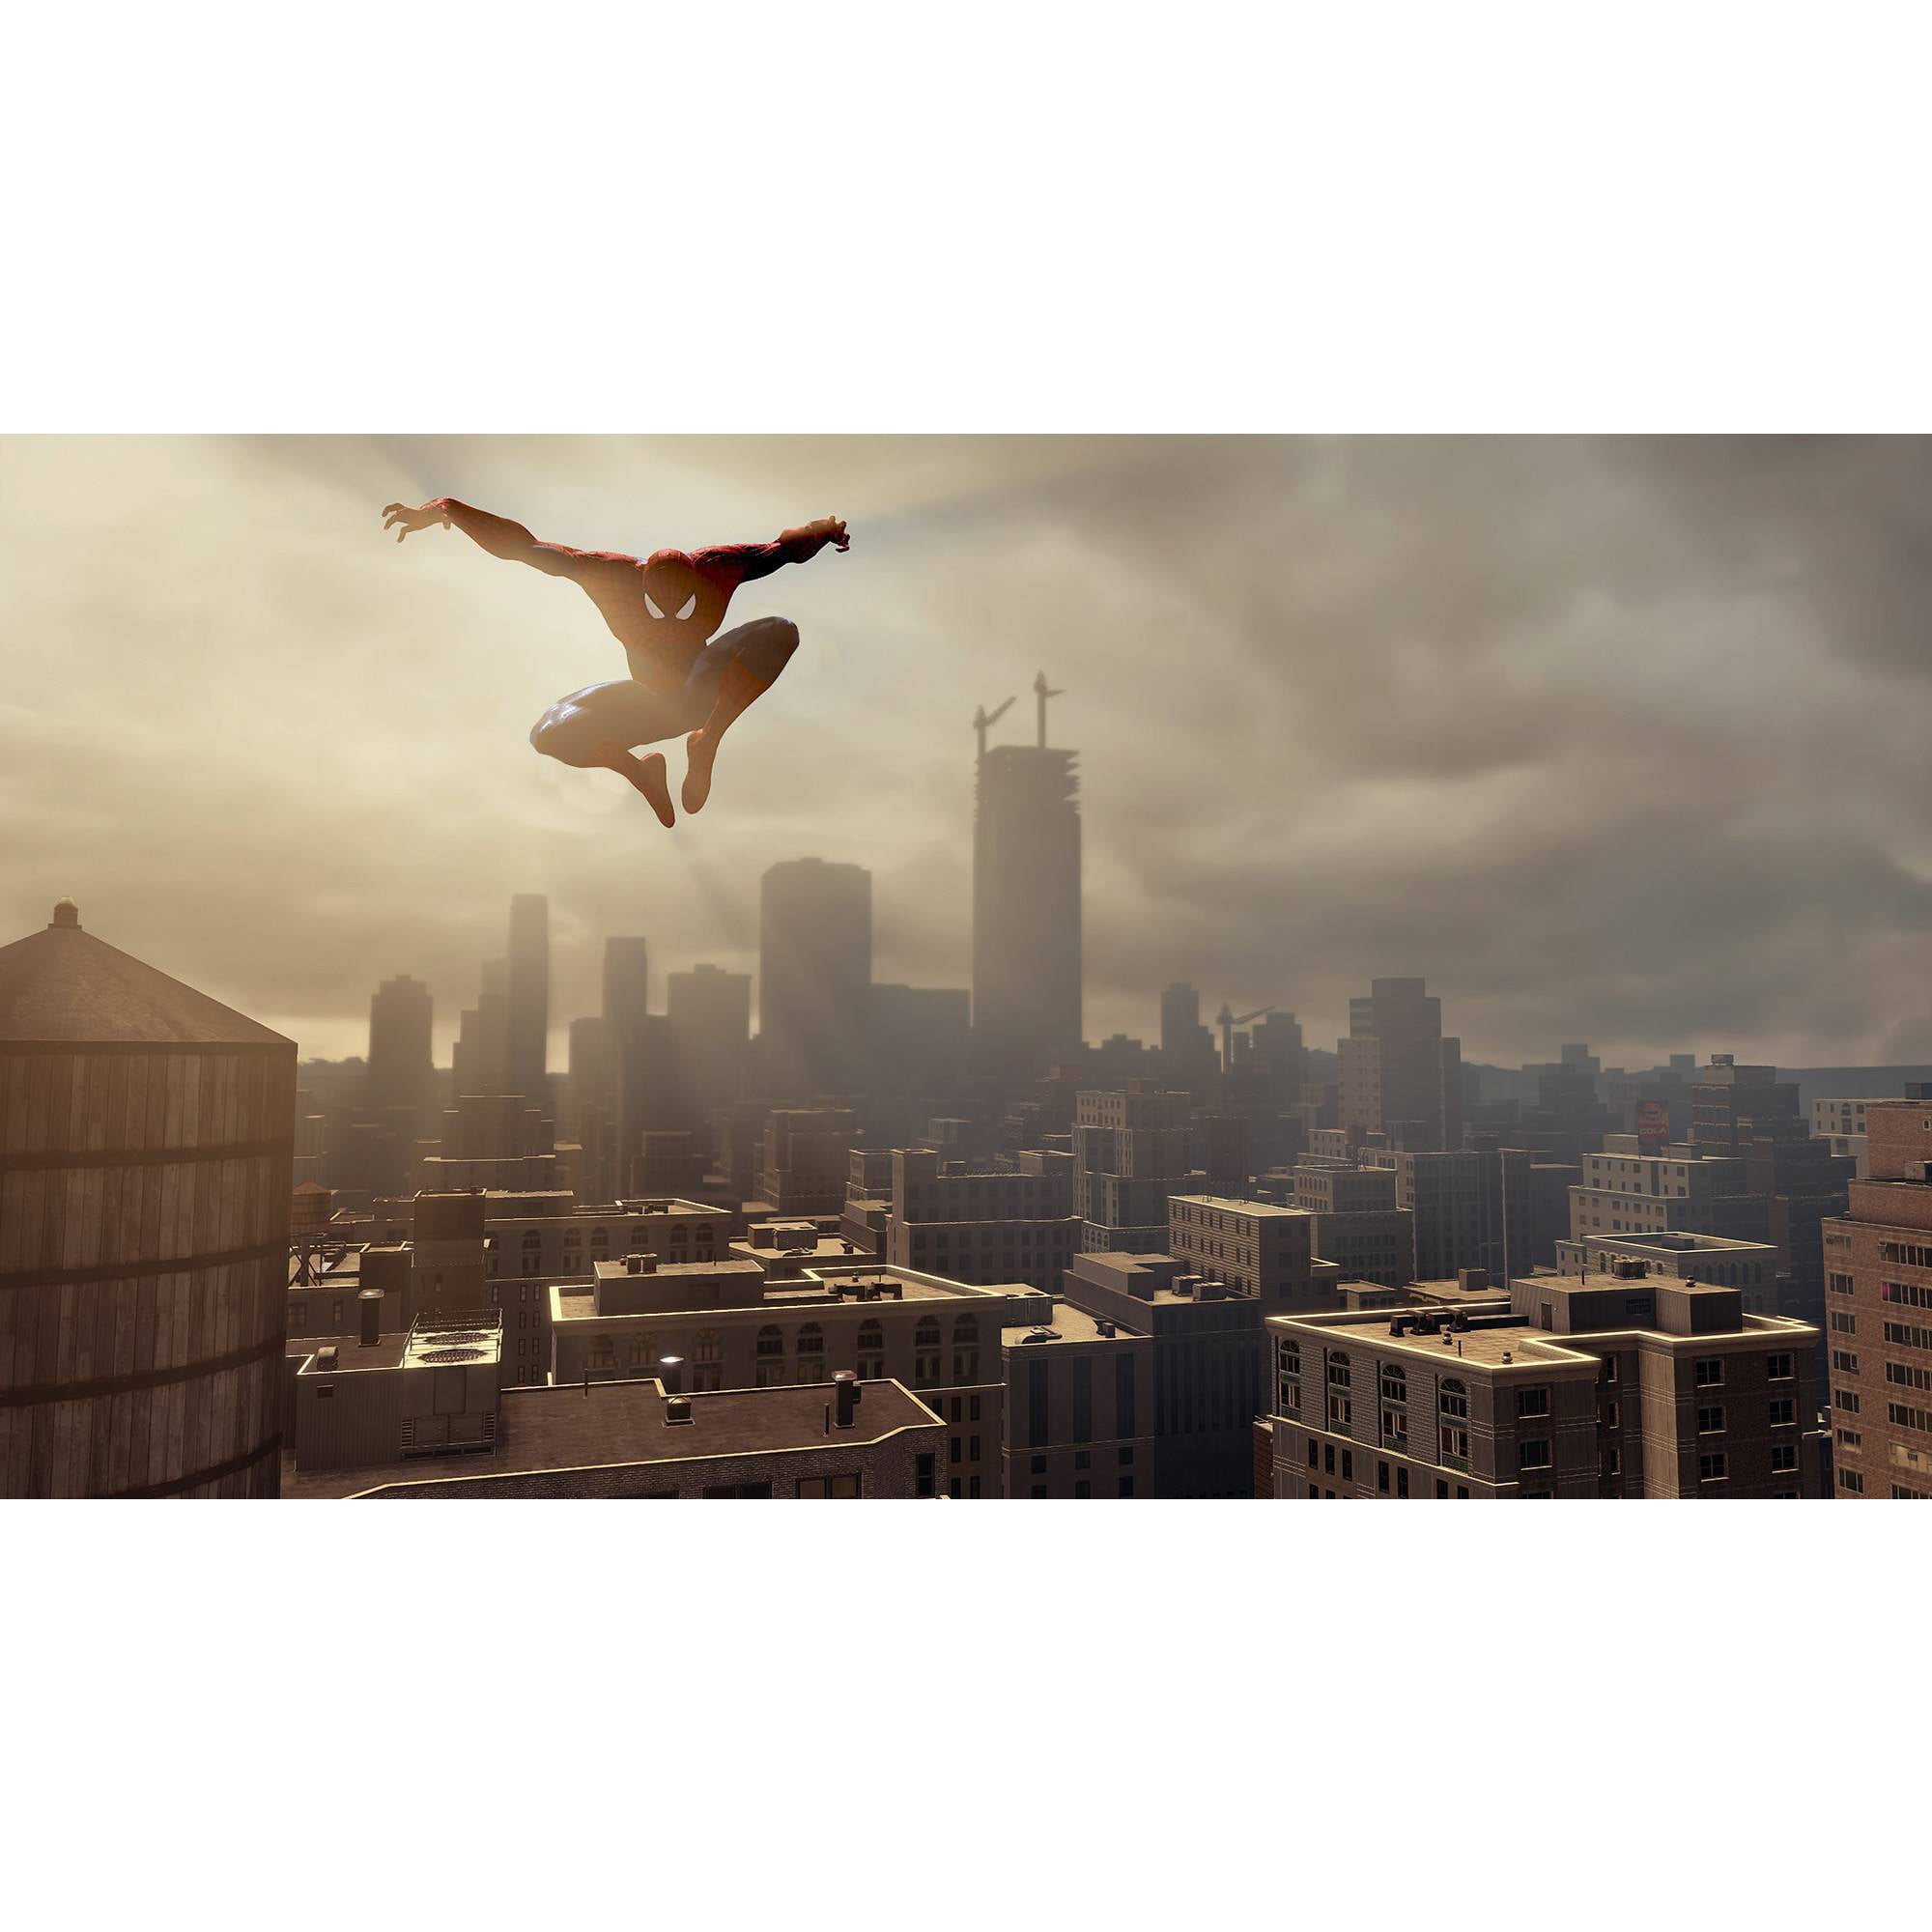 Jogo The Amazing Spider-Man 2 - Xbox One em Promoção na Americanas